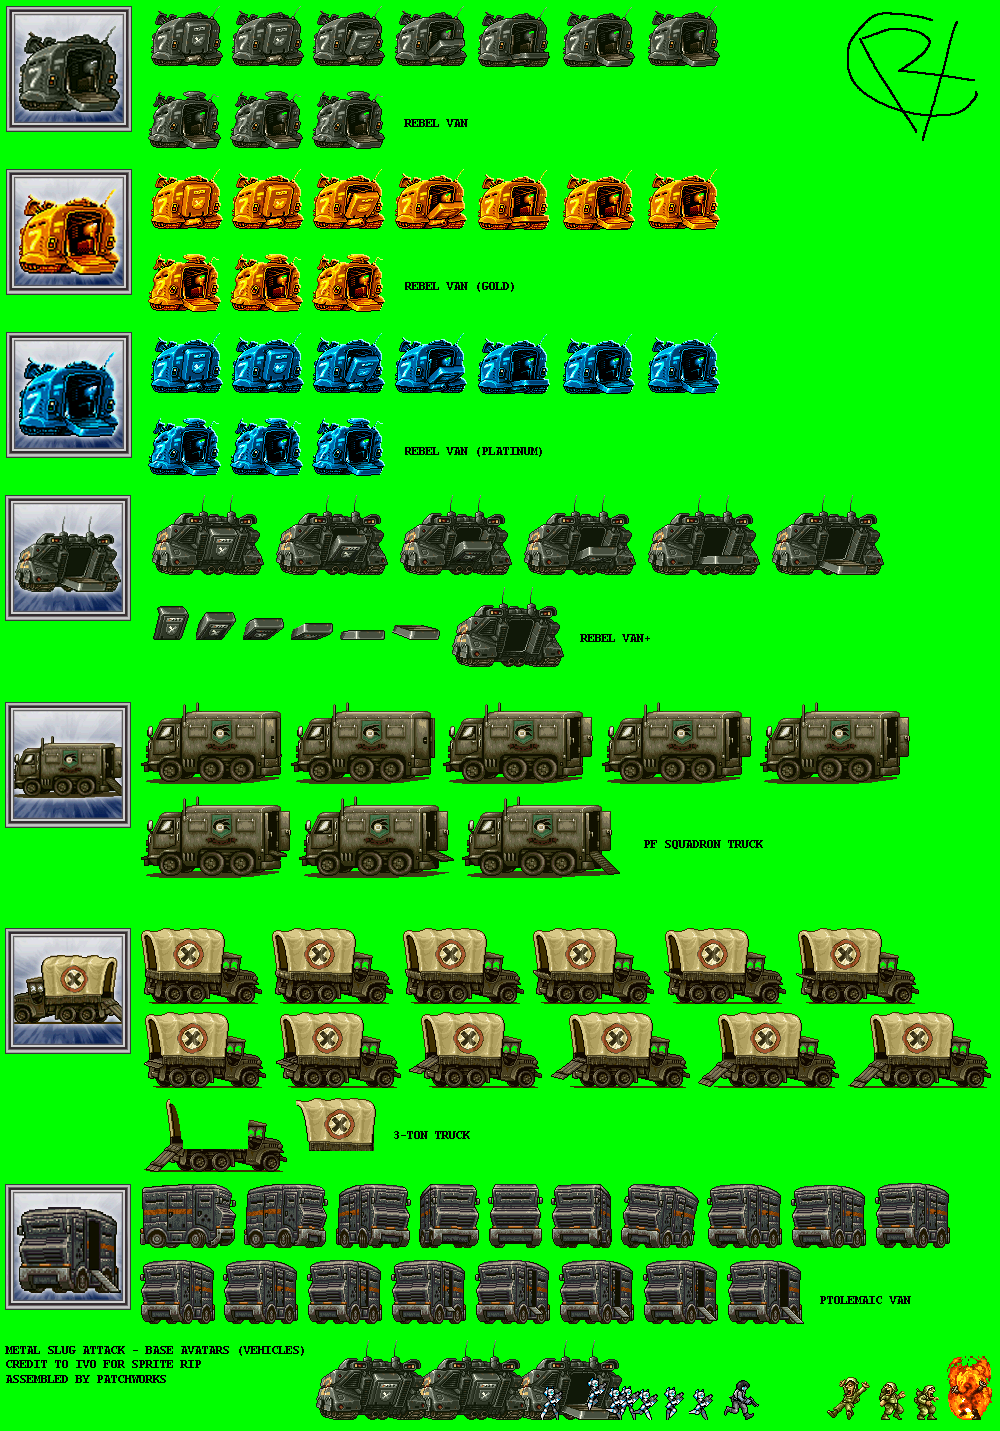 Base Avatars (Vehicles)